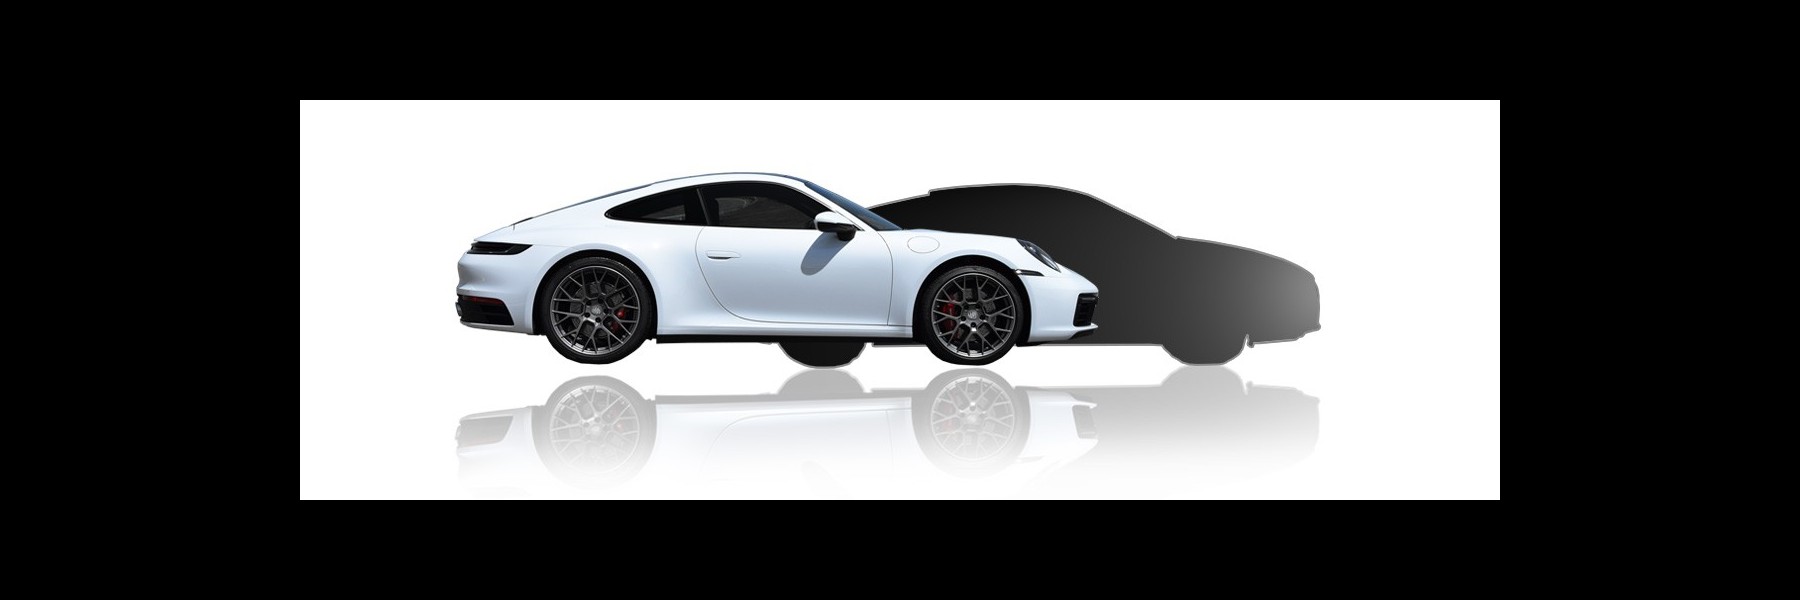 Combo Porsche + car of your choice